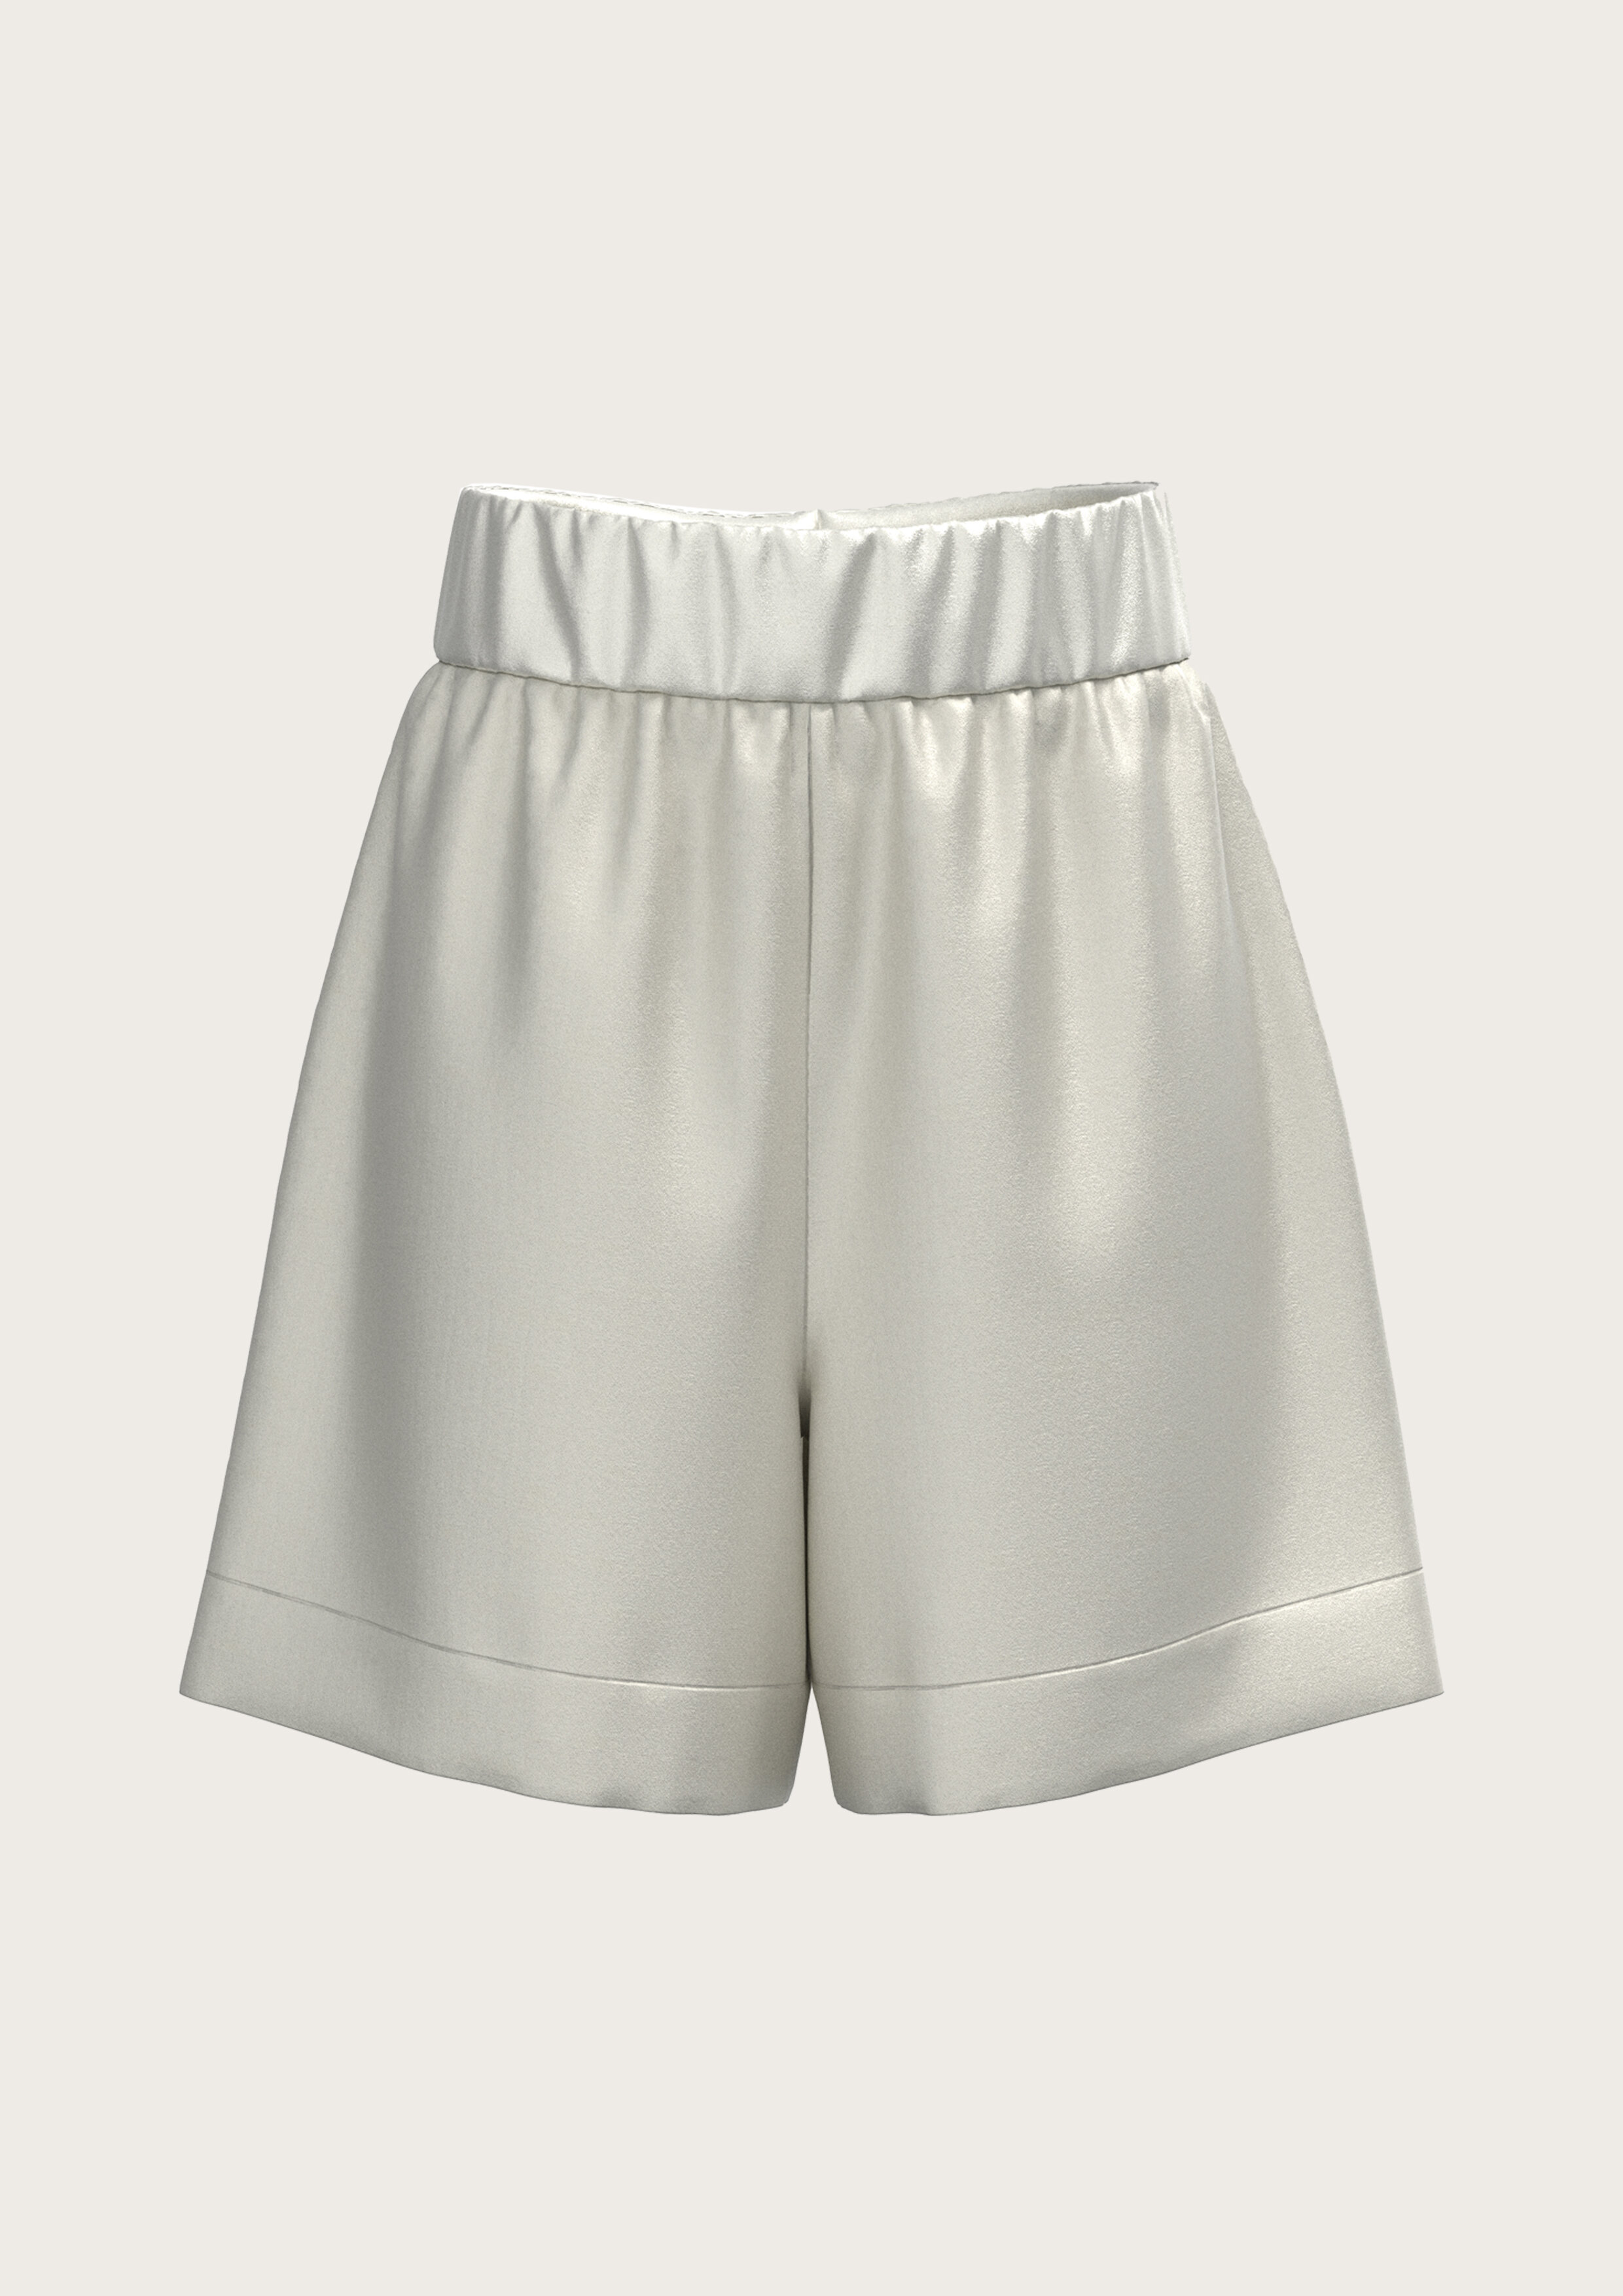 Silk Shorts Lisa in Natural White (Kopie)